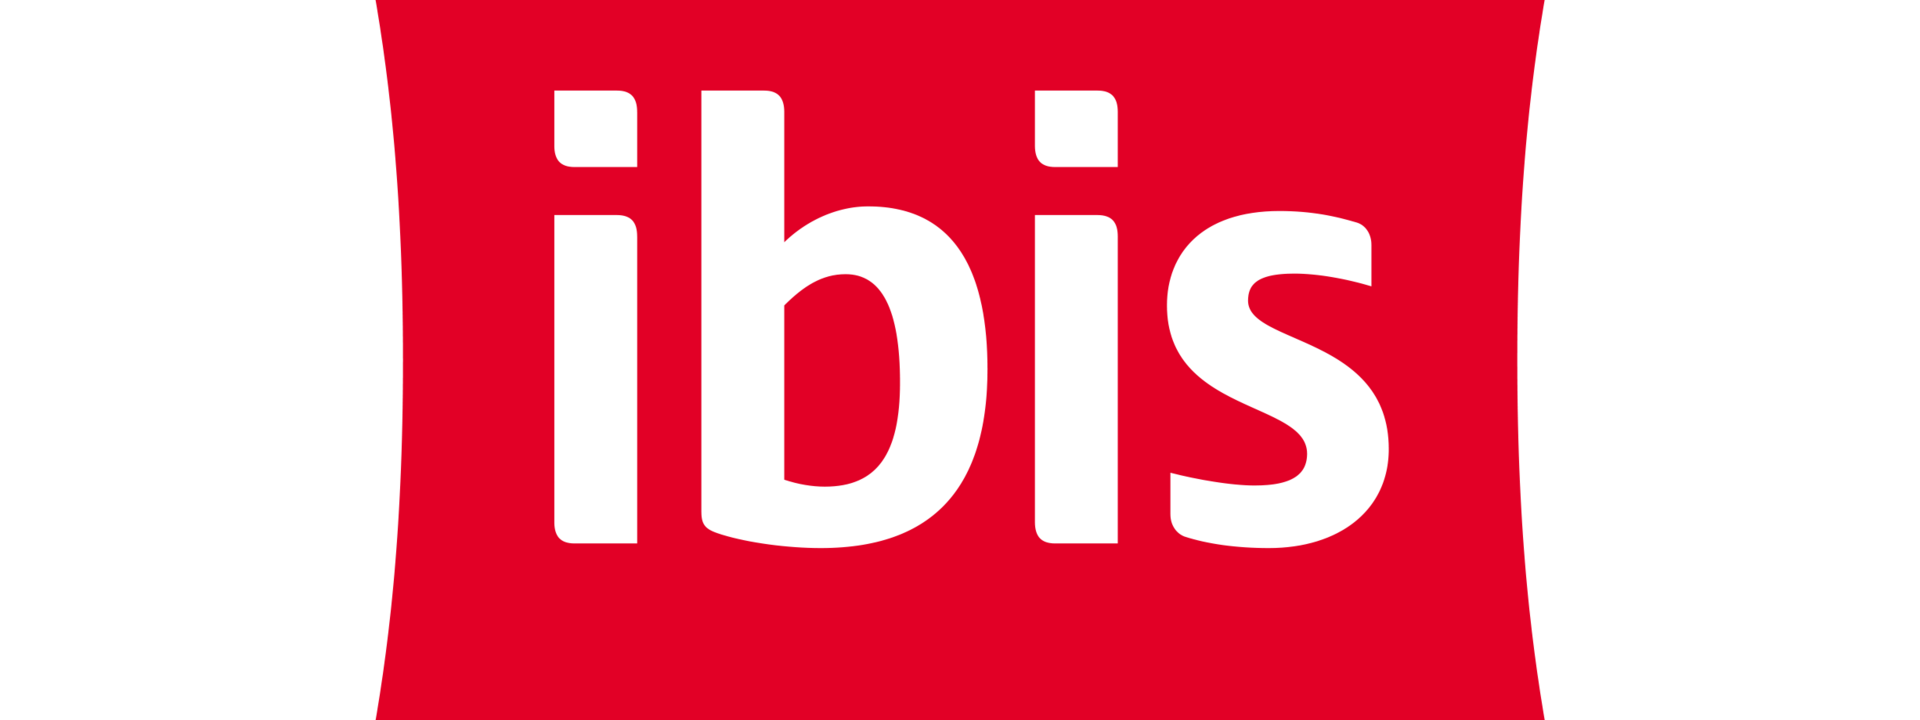 logo_ibis_rgb_3.png